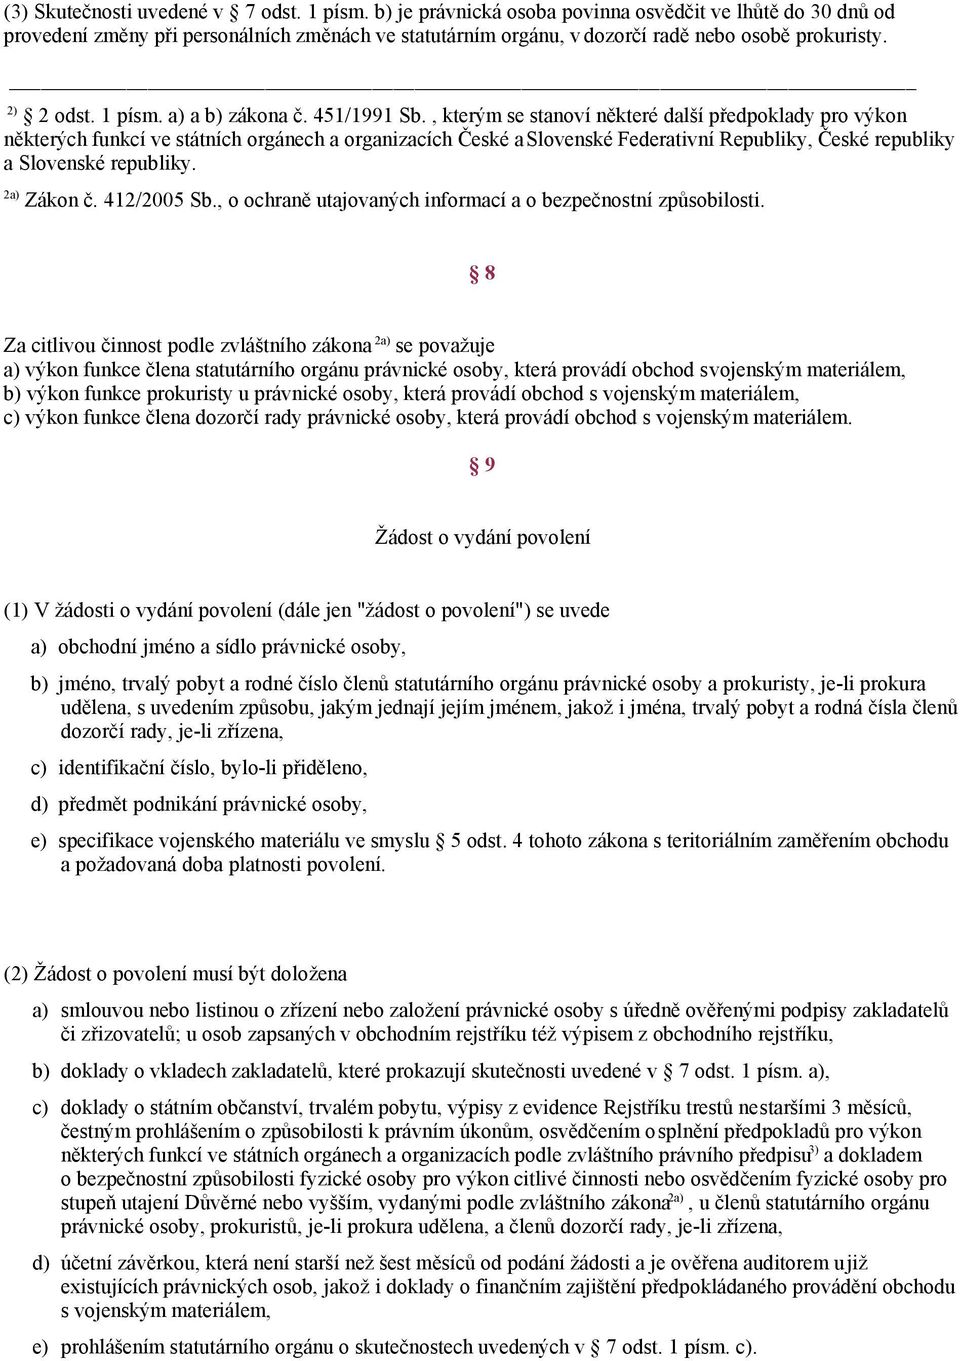 451/1991 Sb., kterým se stanoví některé další předpoklady pro výkon některých funkcí ve státních orgánech a organizacích České a Slovenské Federativní Republiky, České republiky a Slovenské republiky.